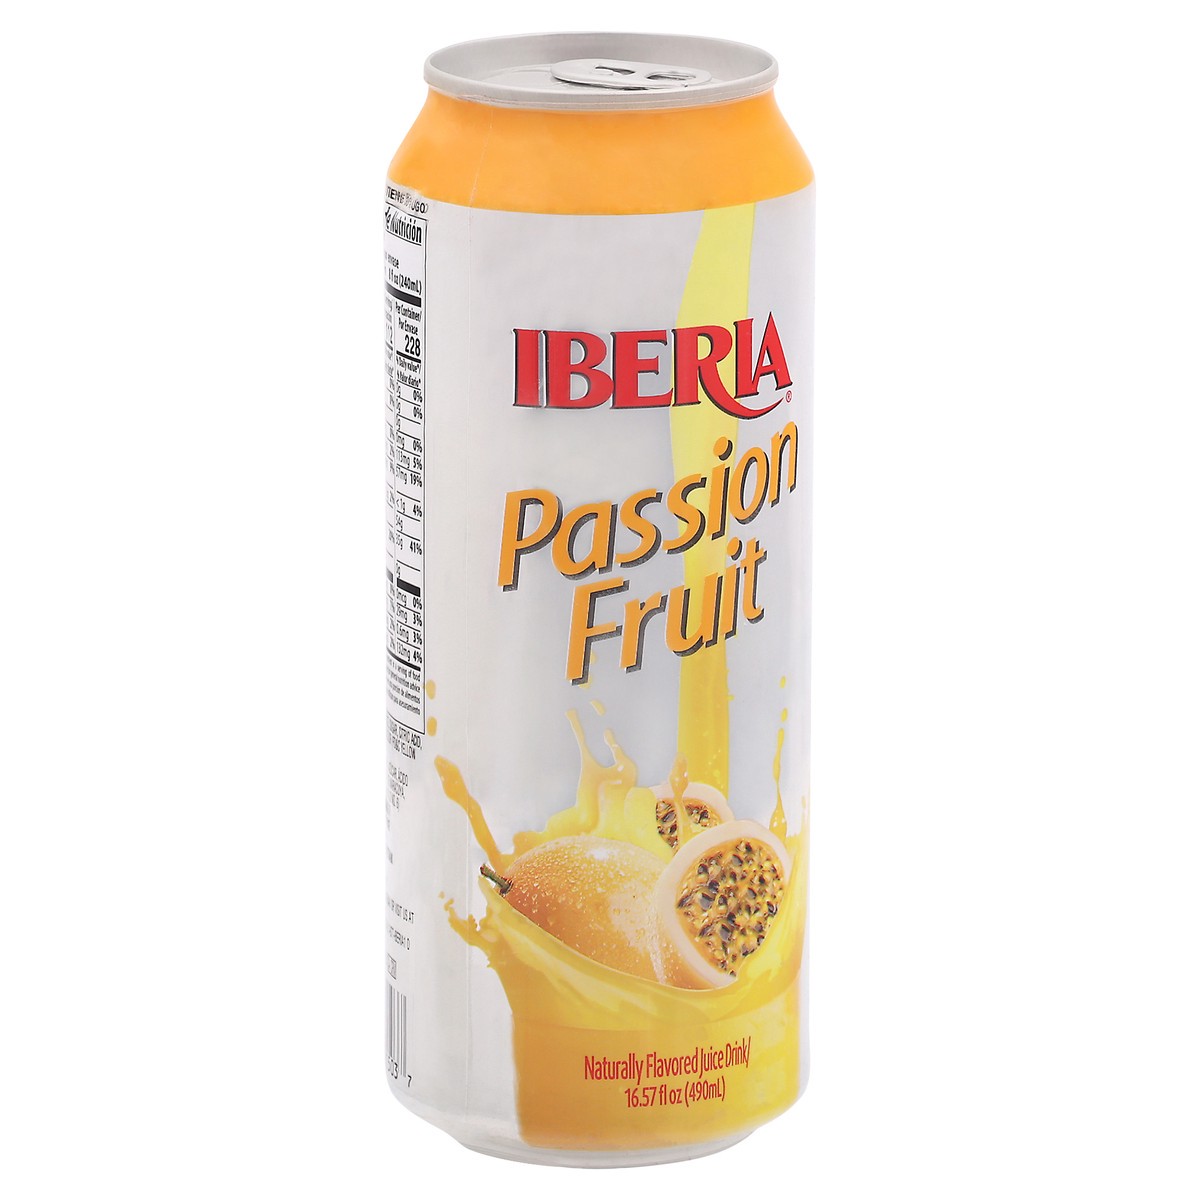 slide 2 of 9, Iberia Passion Fruit Juice Drink 16.57 fl oz Can, 16.57 fl oz